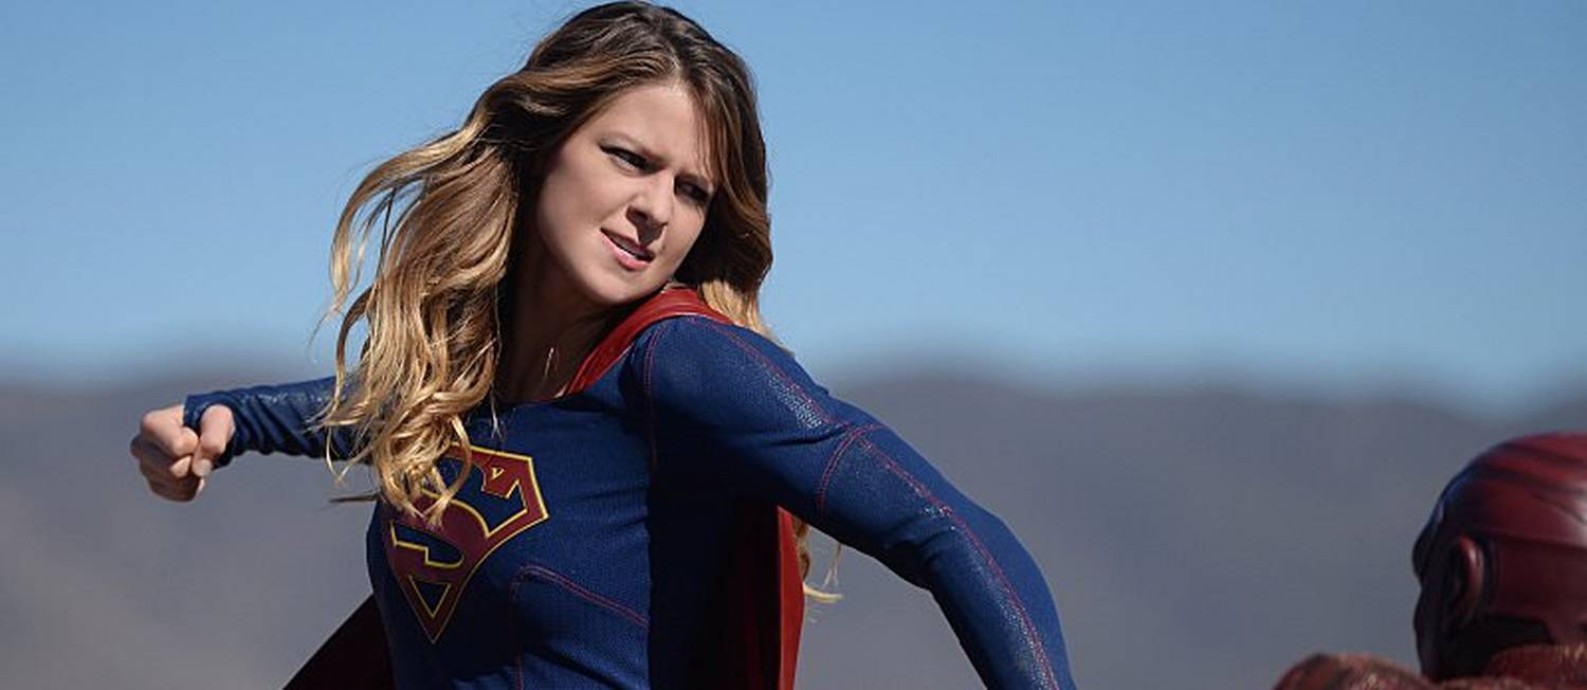 Estrela De Supergirl Melissa Benoist Comenta Acusações De Assédio